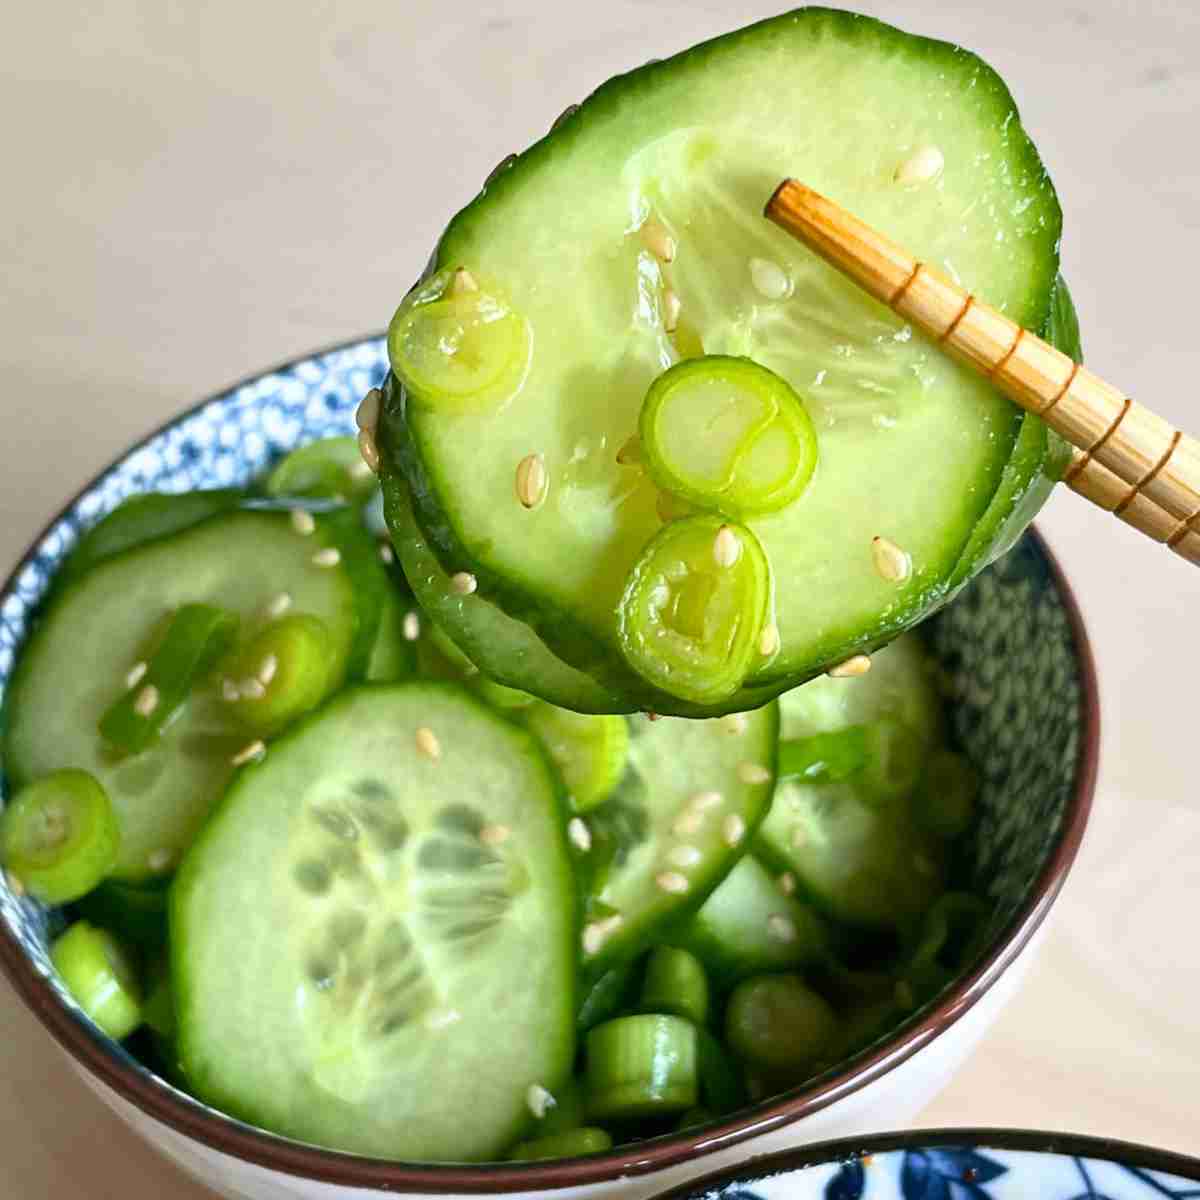 Korean cucumber salad recipe easy